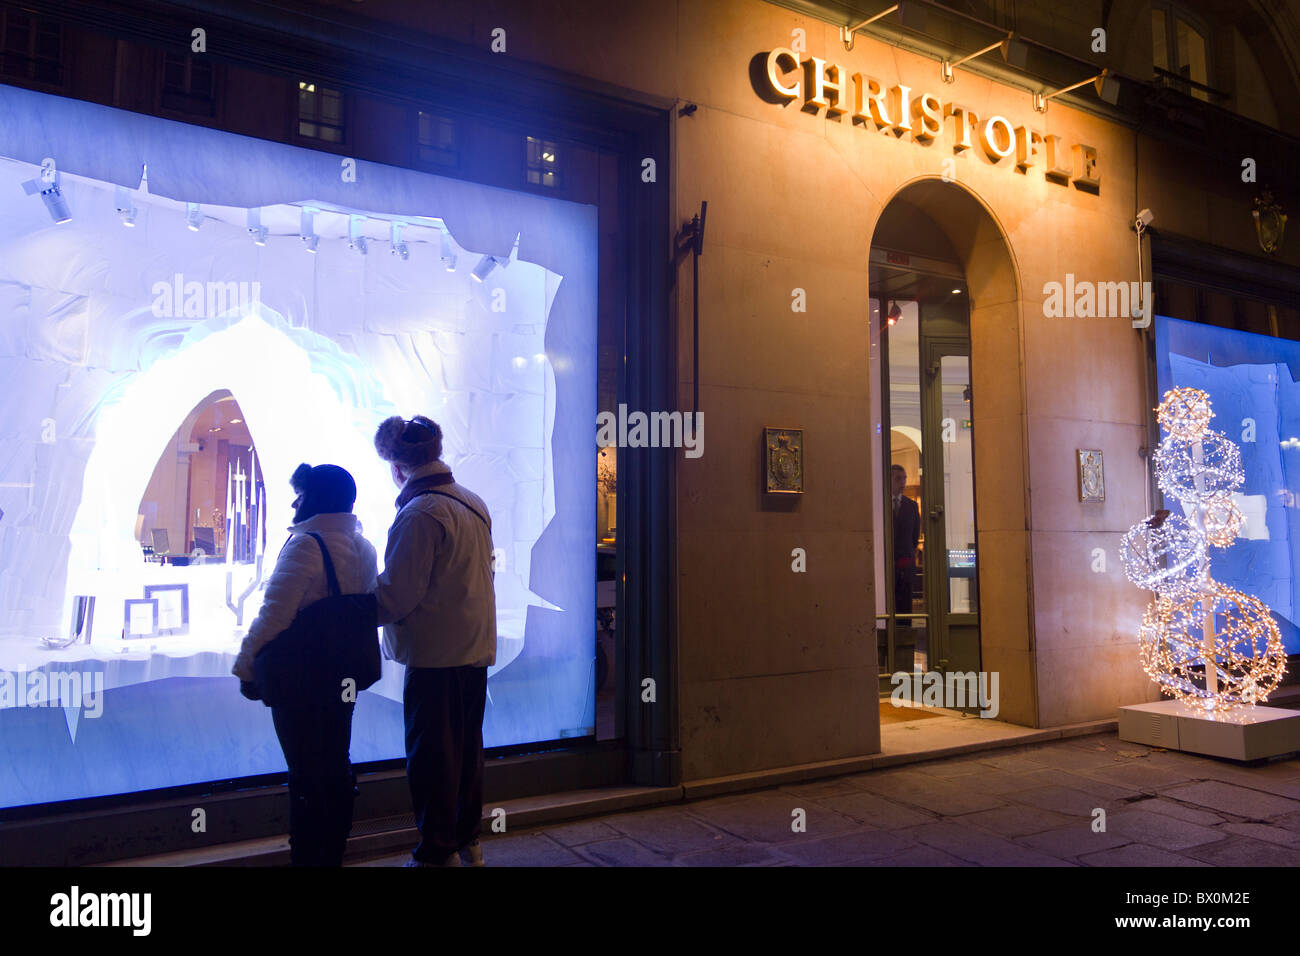 Christofle boutique de luxe avec affichage de Noël, rue Royale, Paris, France Banque D'Images